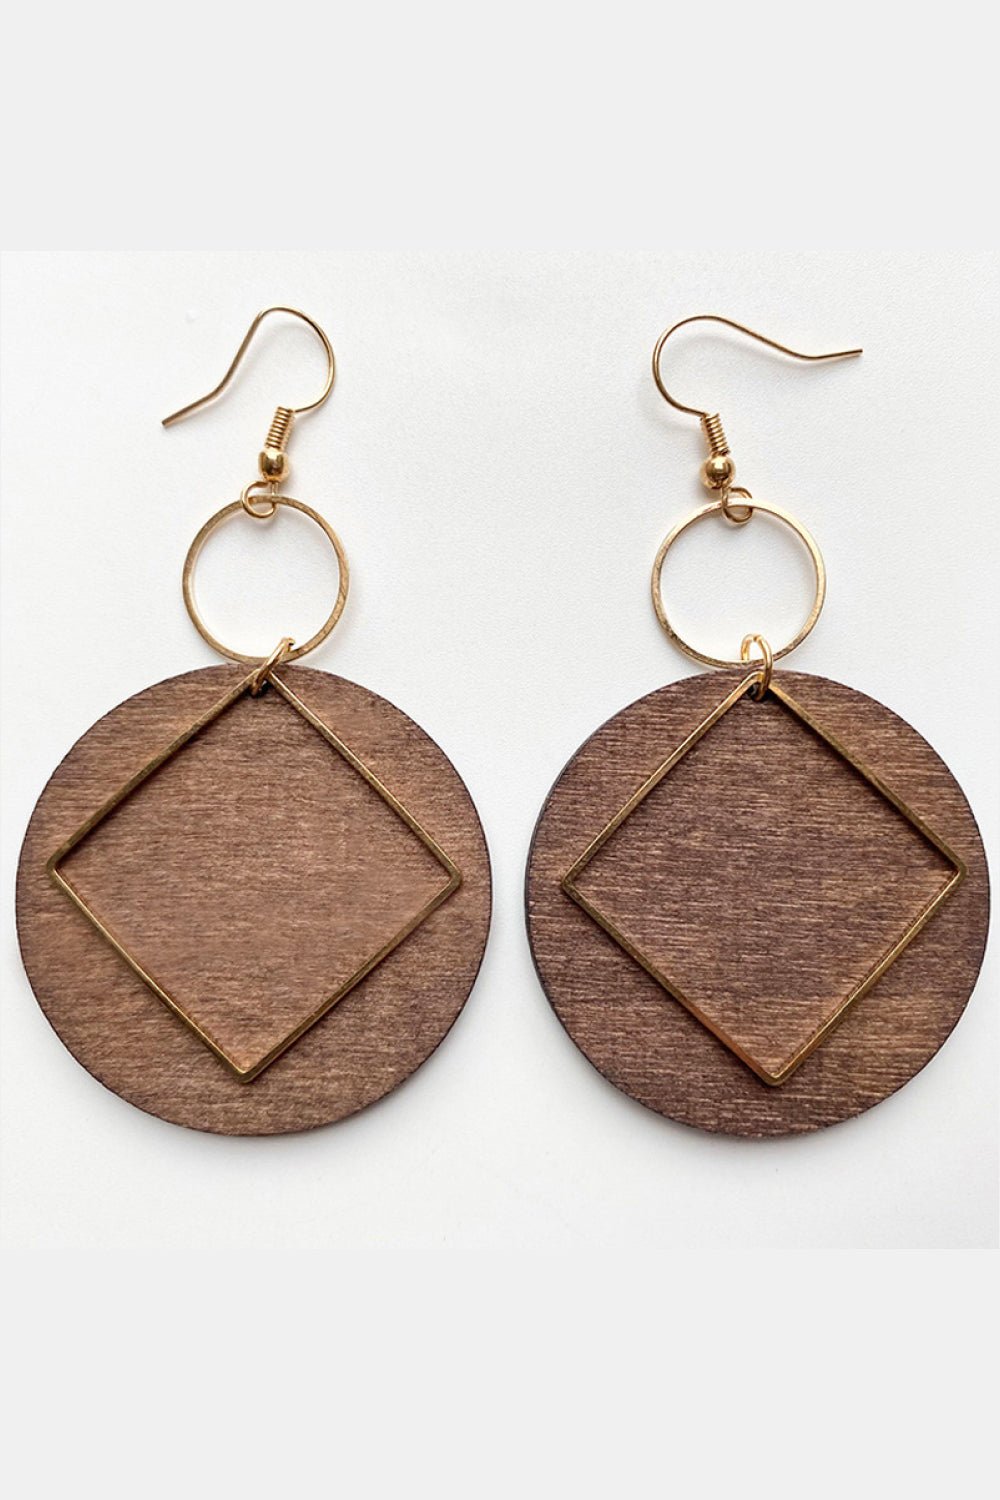 Geometrical Shape Wooden Dangle Earrings - Beauty Junkee Collection